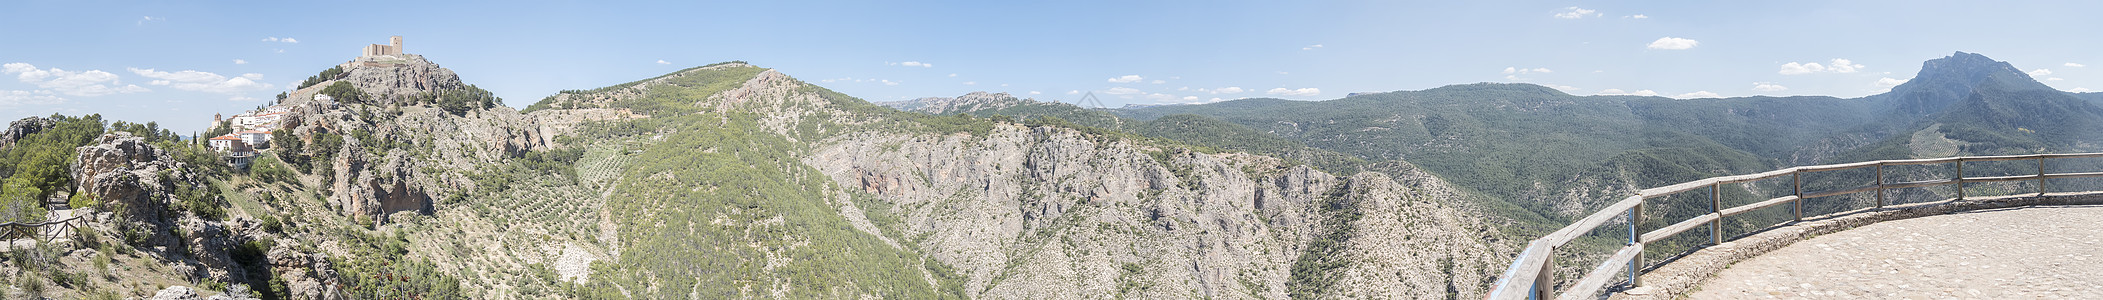 全景 哈恩 西班牙 跑道 风景 山脉 流动的 岩石 晴天图片